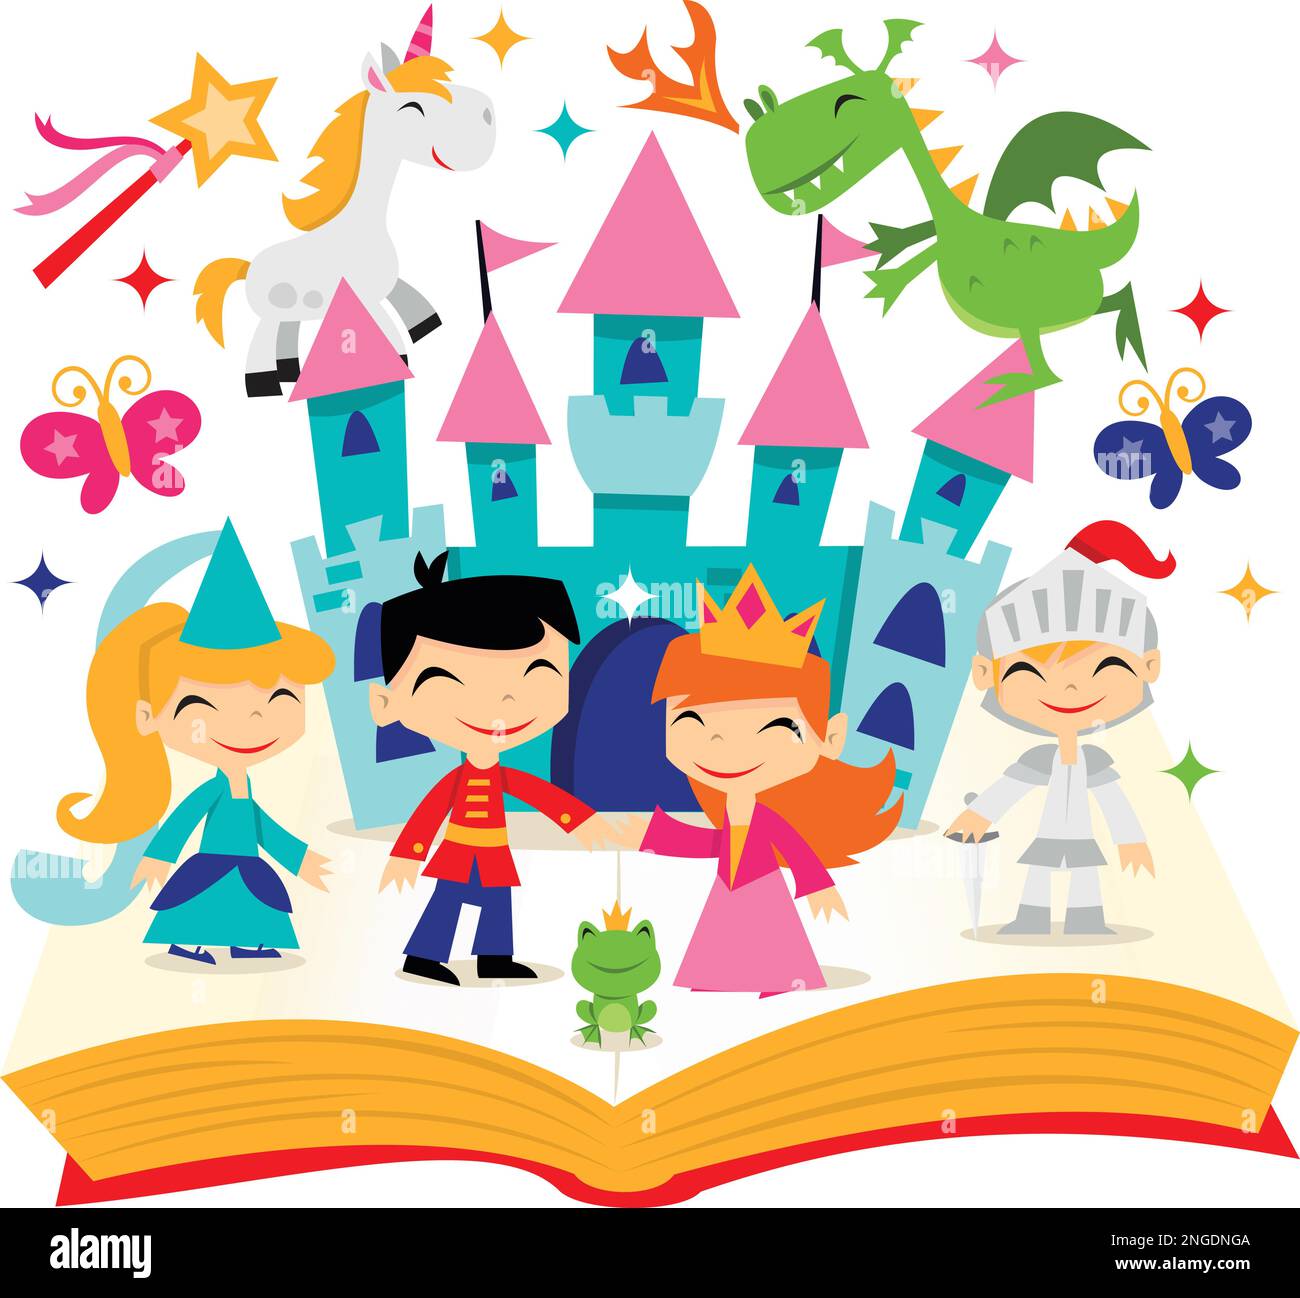 Ein Cartoon-Vektorbild eines niedlichen magischen Märchenbuchs im Retro-Stil. Es ist gefüllt mit Einhorn, Drachen, Prinzessinnen, Schloss und mehr. Stock Vektor